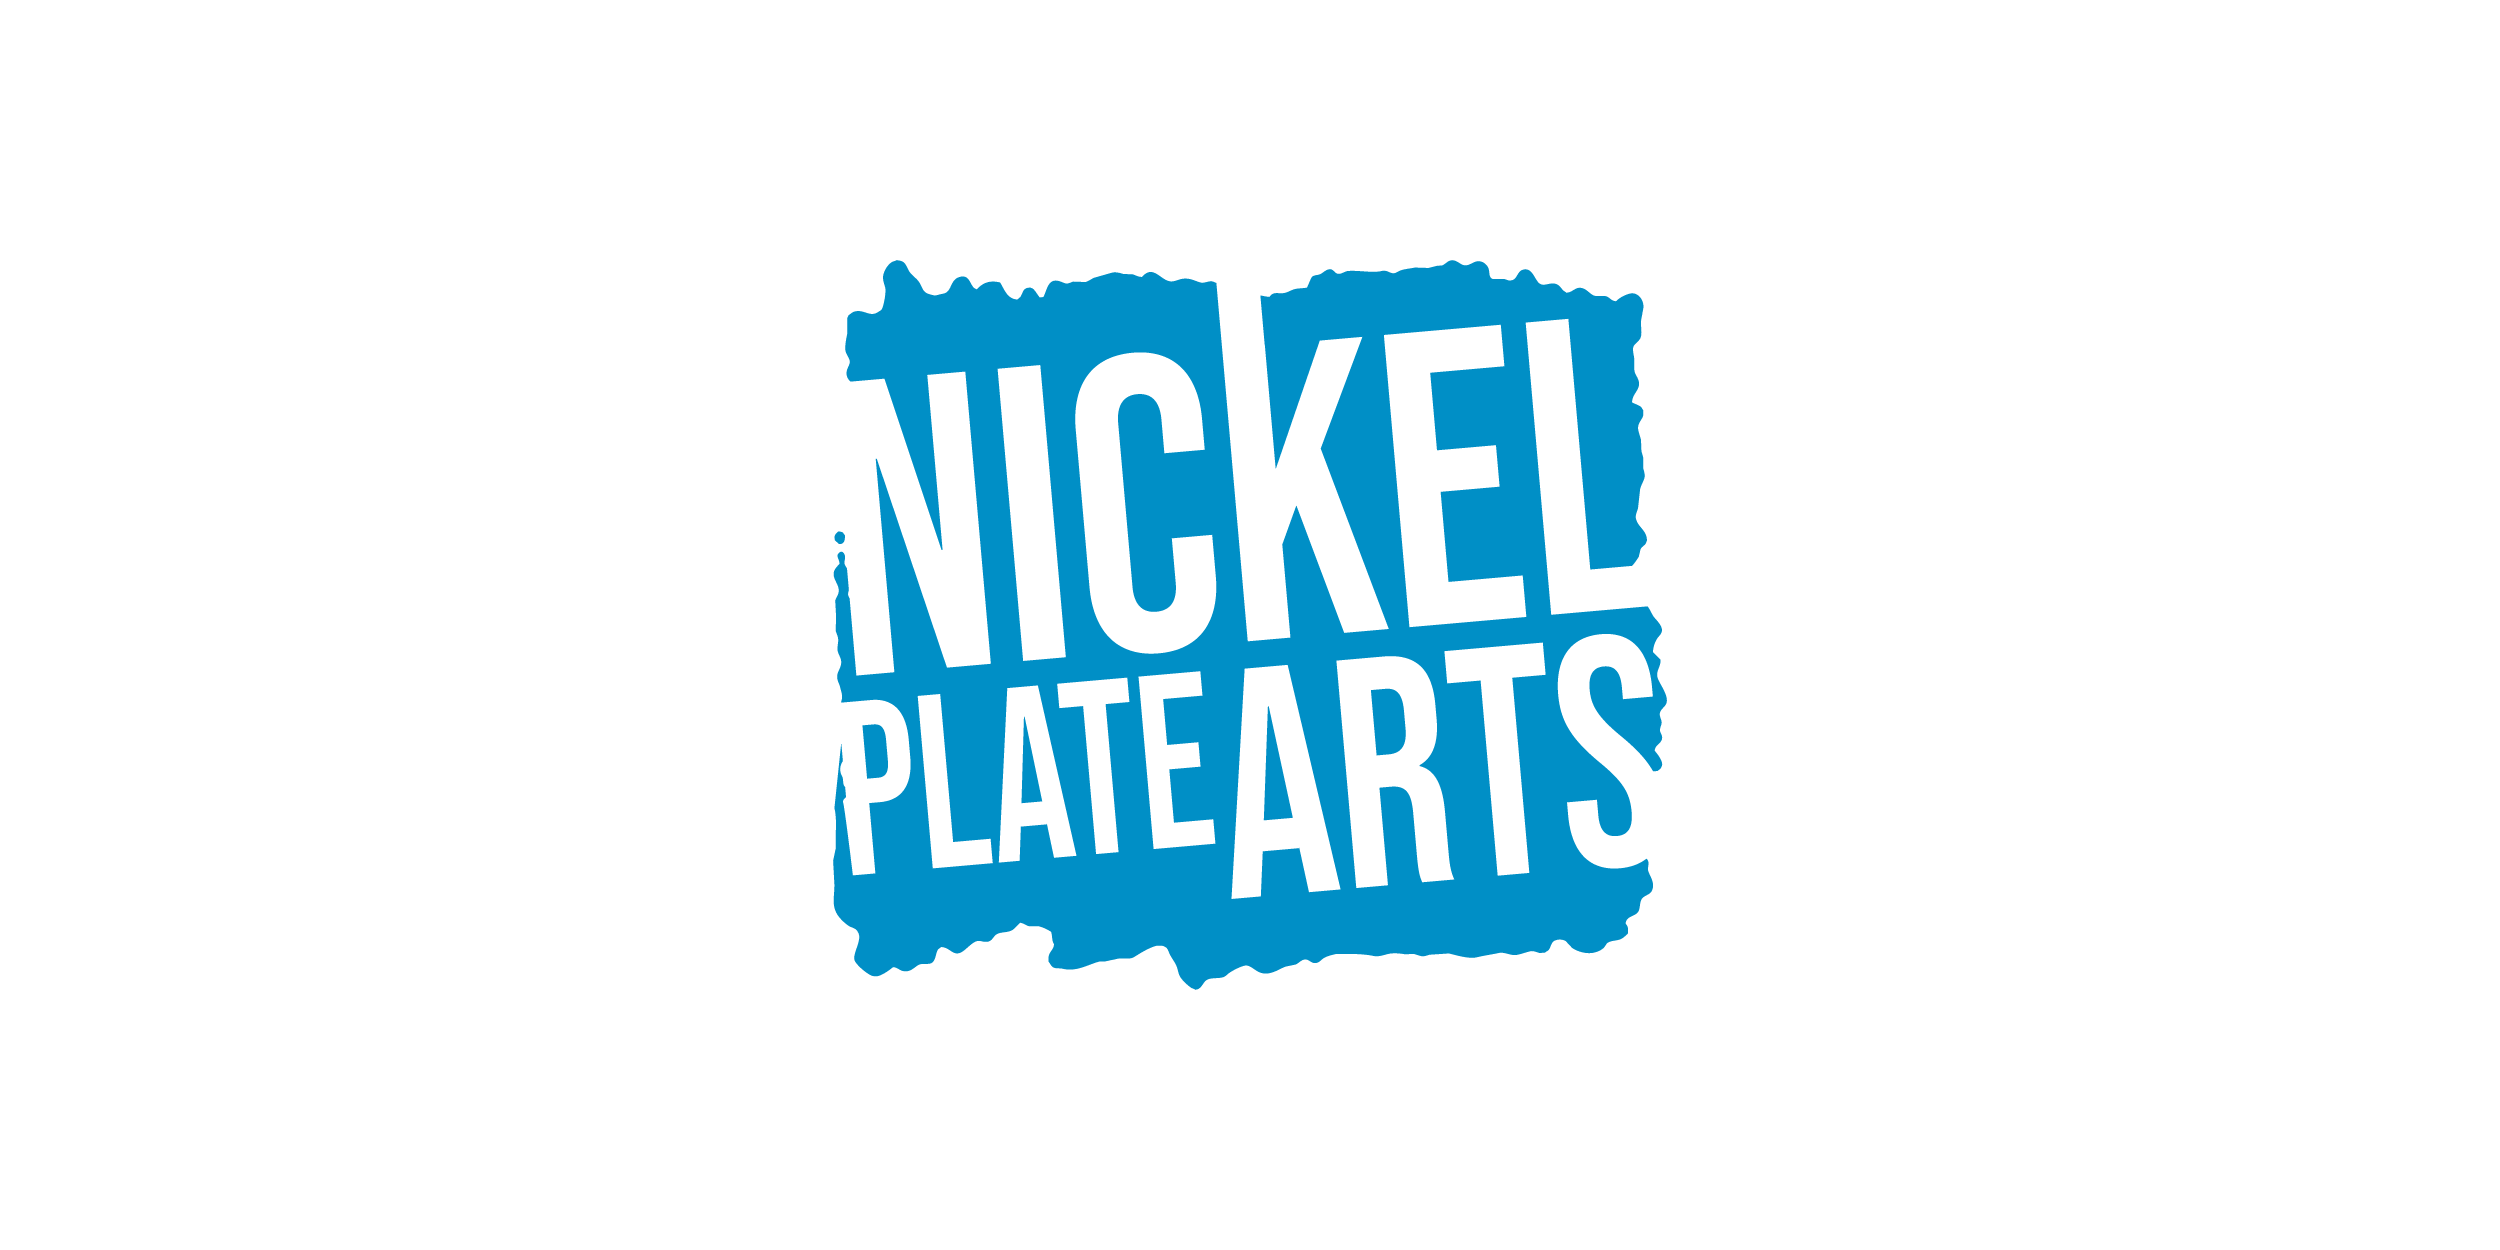 Nickel Plate Arts